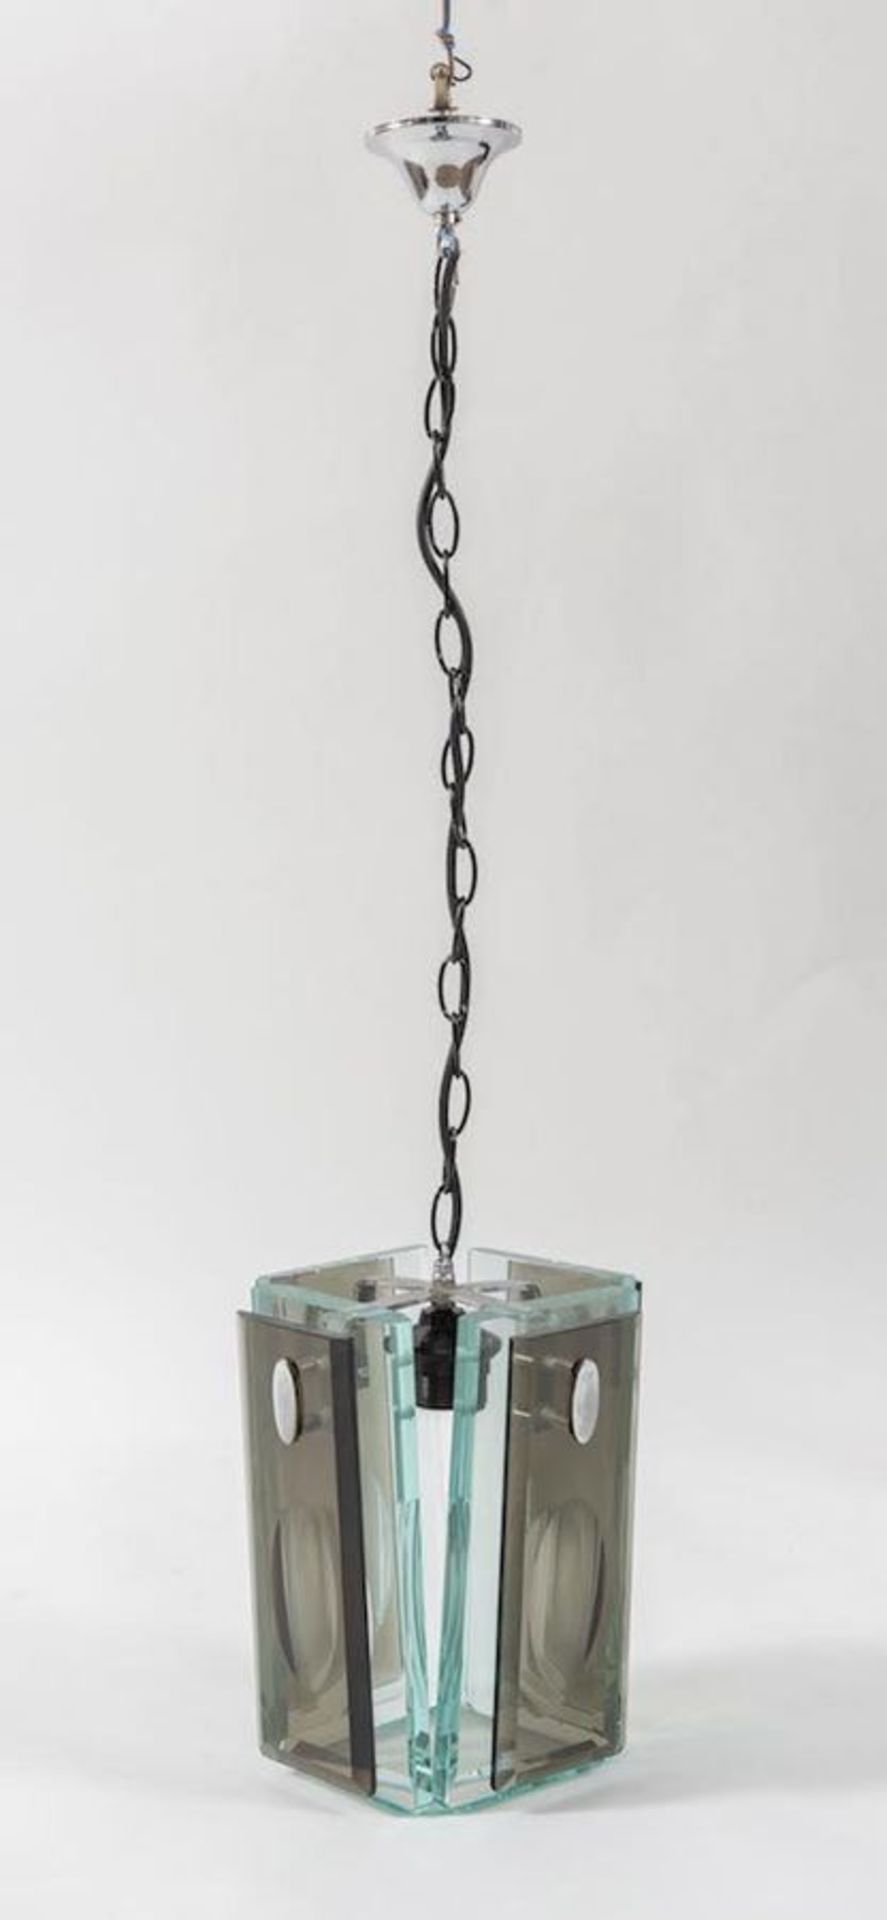 Lampadario in vetro molato con struttura in metallo. Prod. Italia, 1970 ca. Cm 100x24x24.